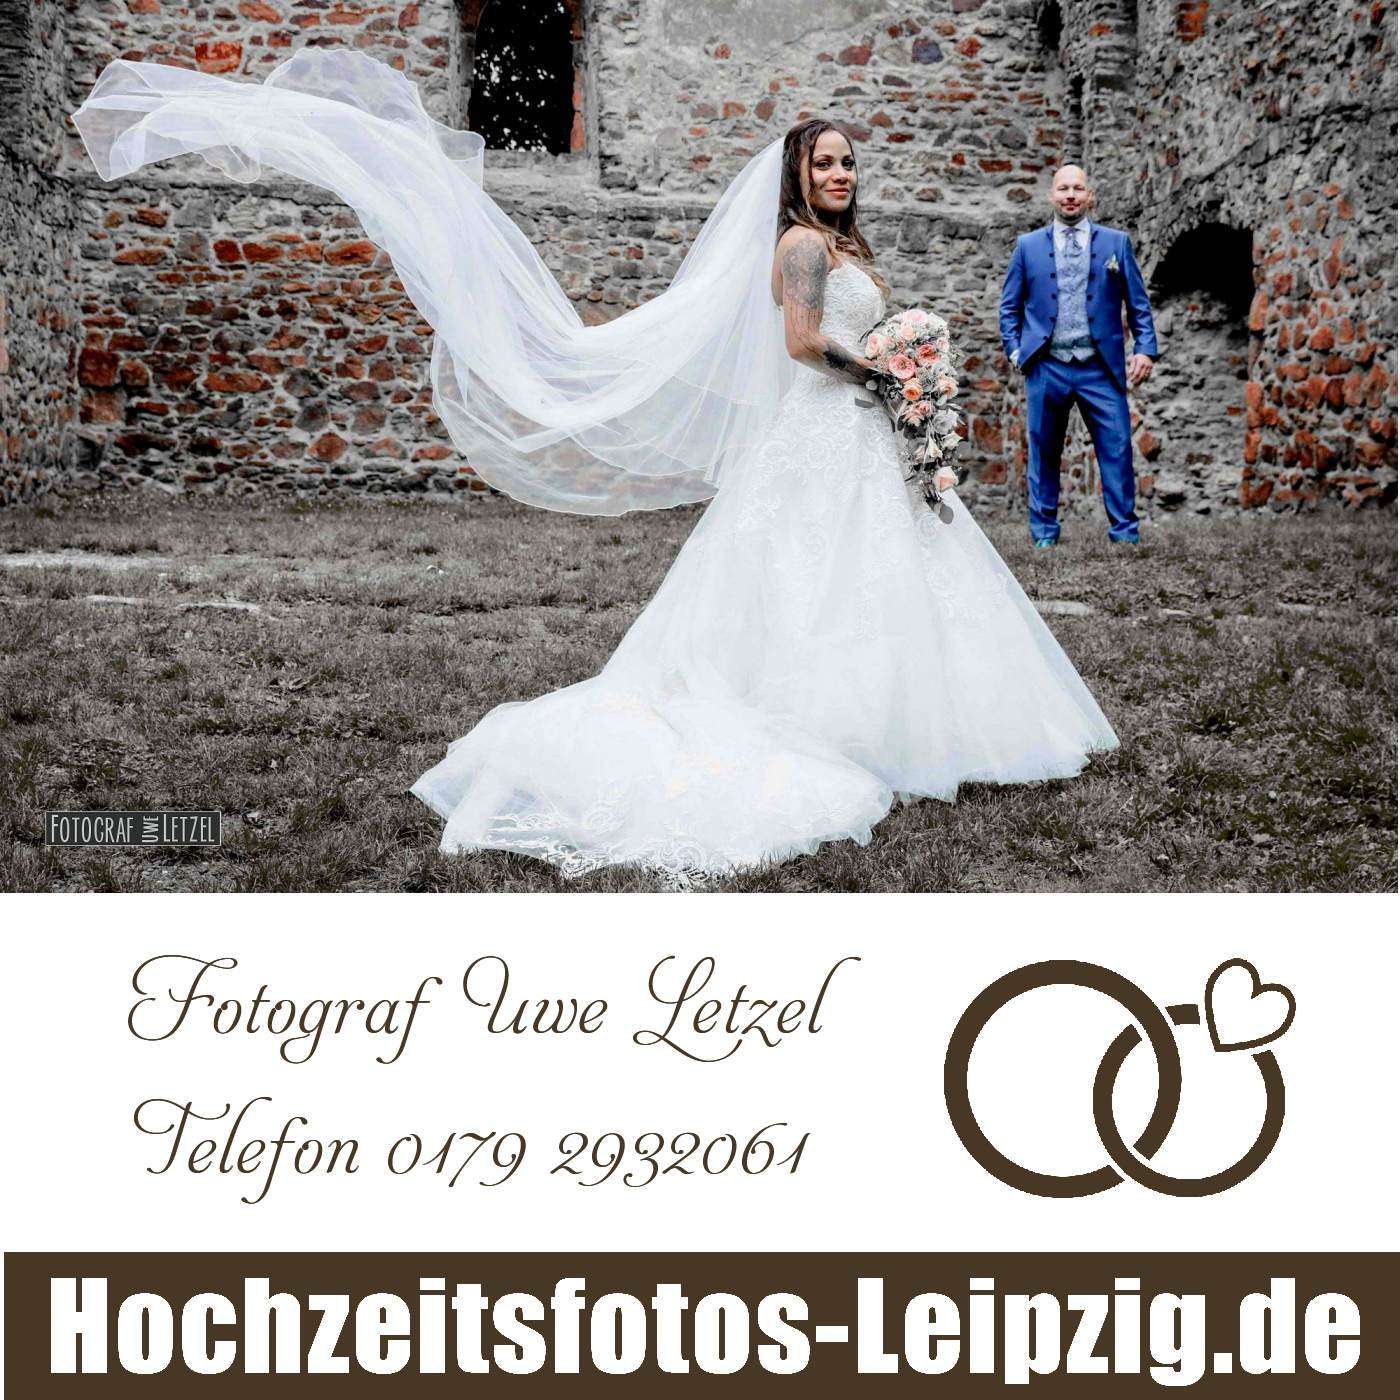 Fotograf zur Hochzeit in Merseburg buchen